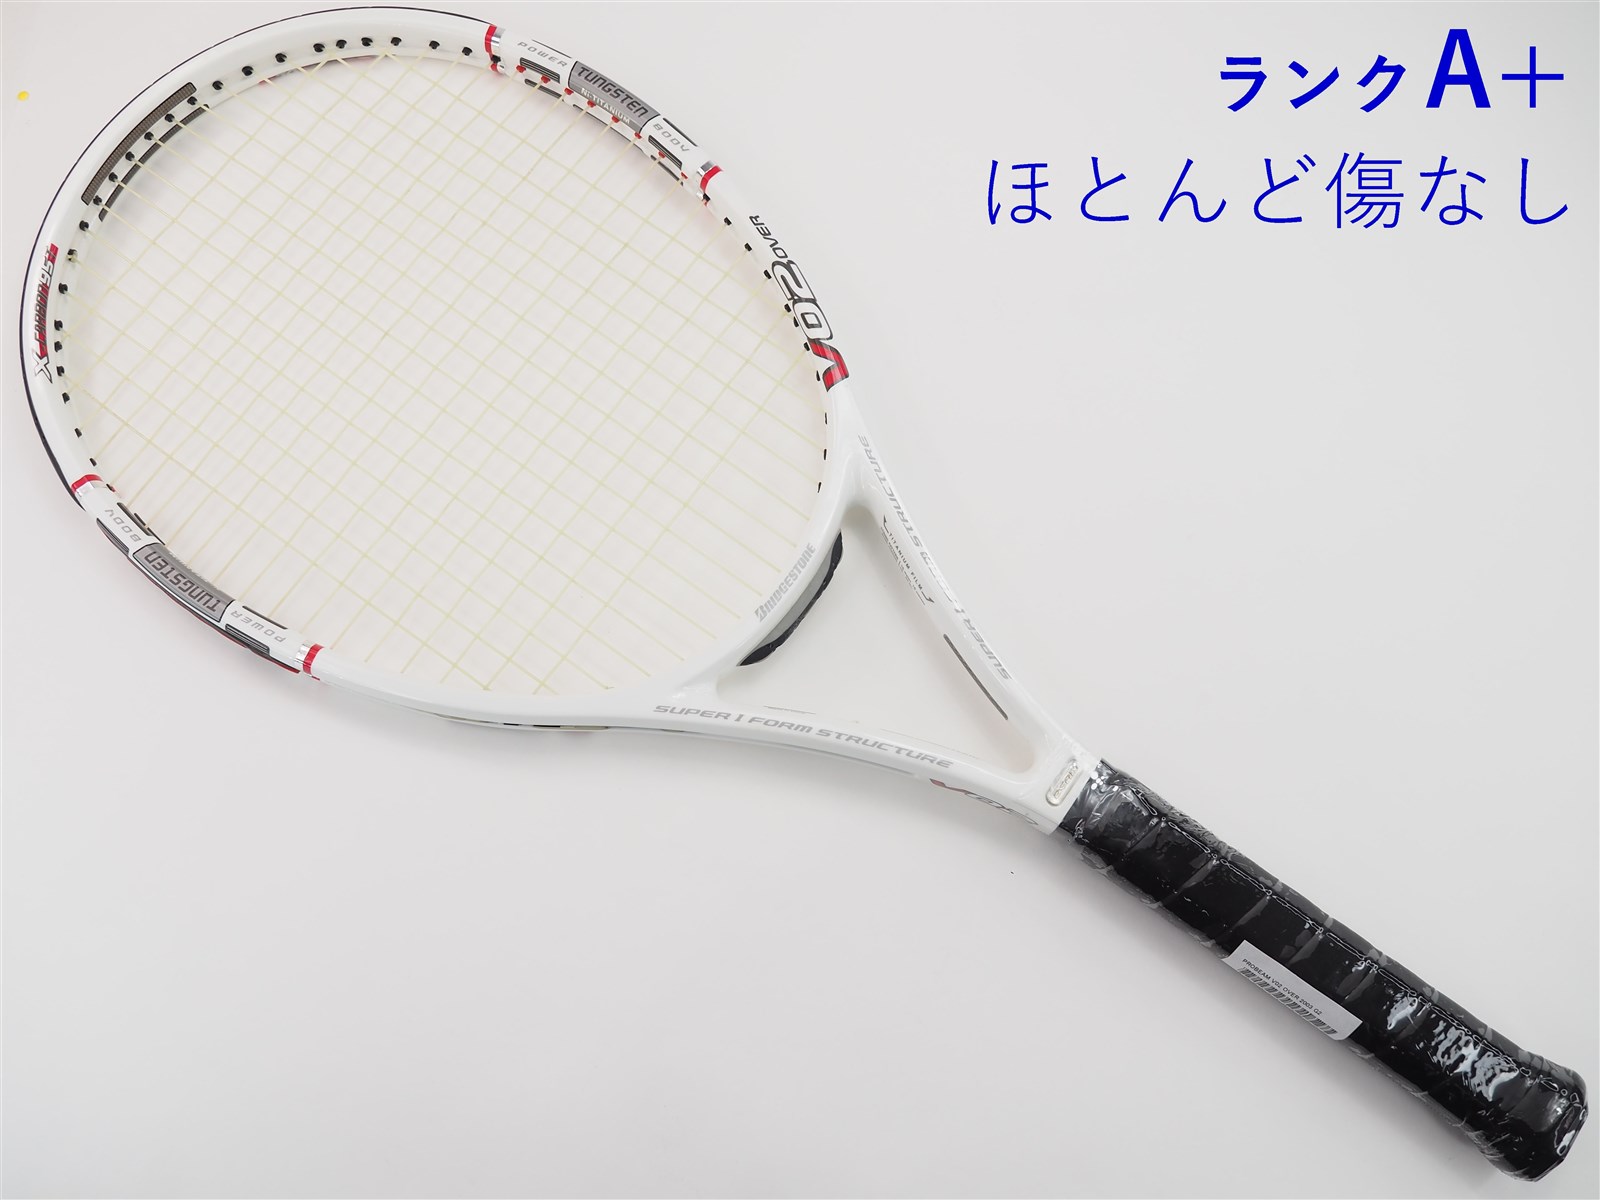 テニスラケット ブリヂストン プロビーム V-WI 3.0 2004年モデル (G2)BRIDGESTONE PROBEAM V-WI 3.0 2004